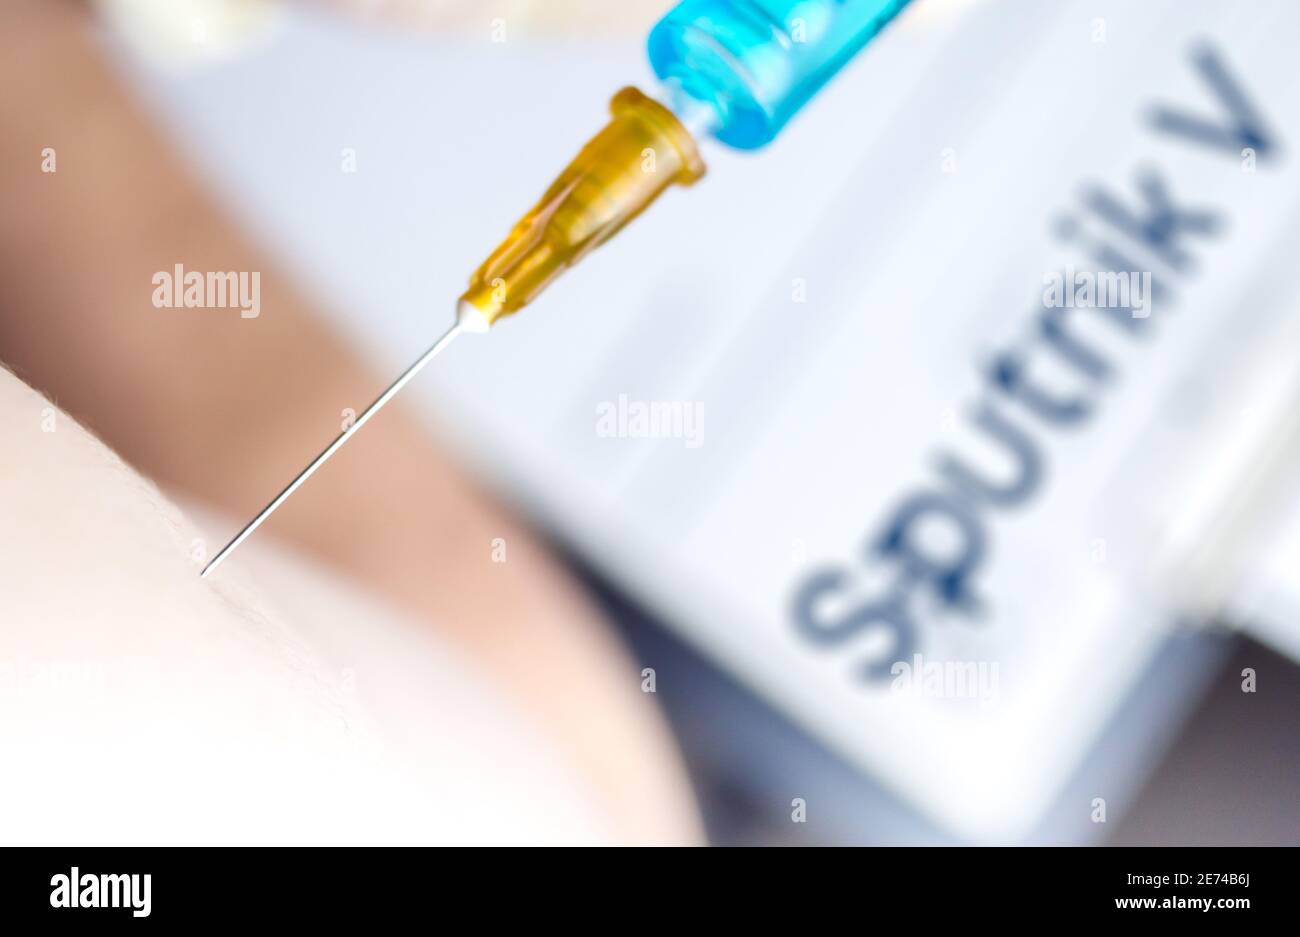 Vienne Autriche Jan.29 2021, gros plan de la personne qui obtient le vaccin contre le logo flou Spoutnik V, Spoutnik est le vaccin russe Covid19 développé par le Banque D'Images